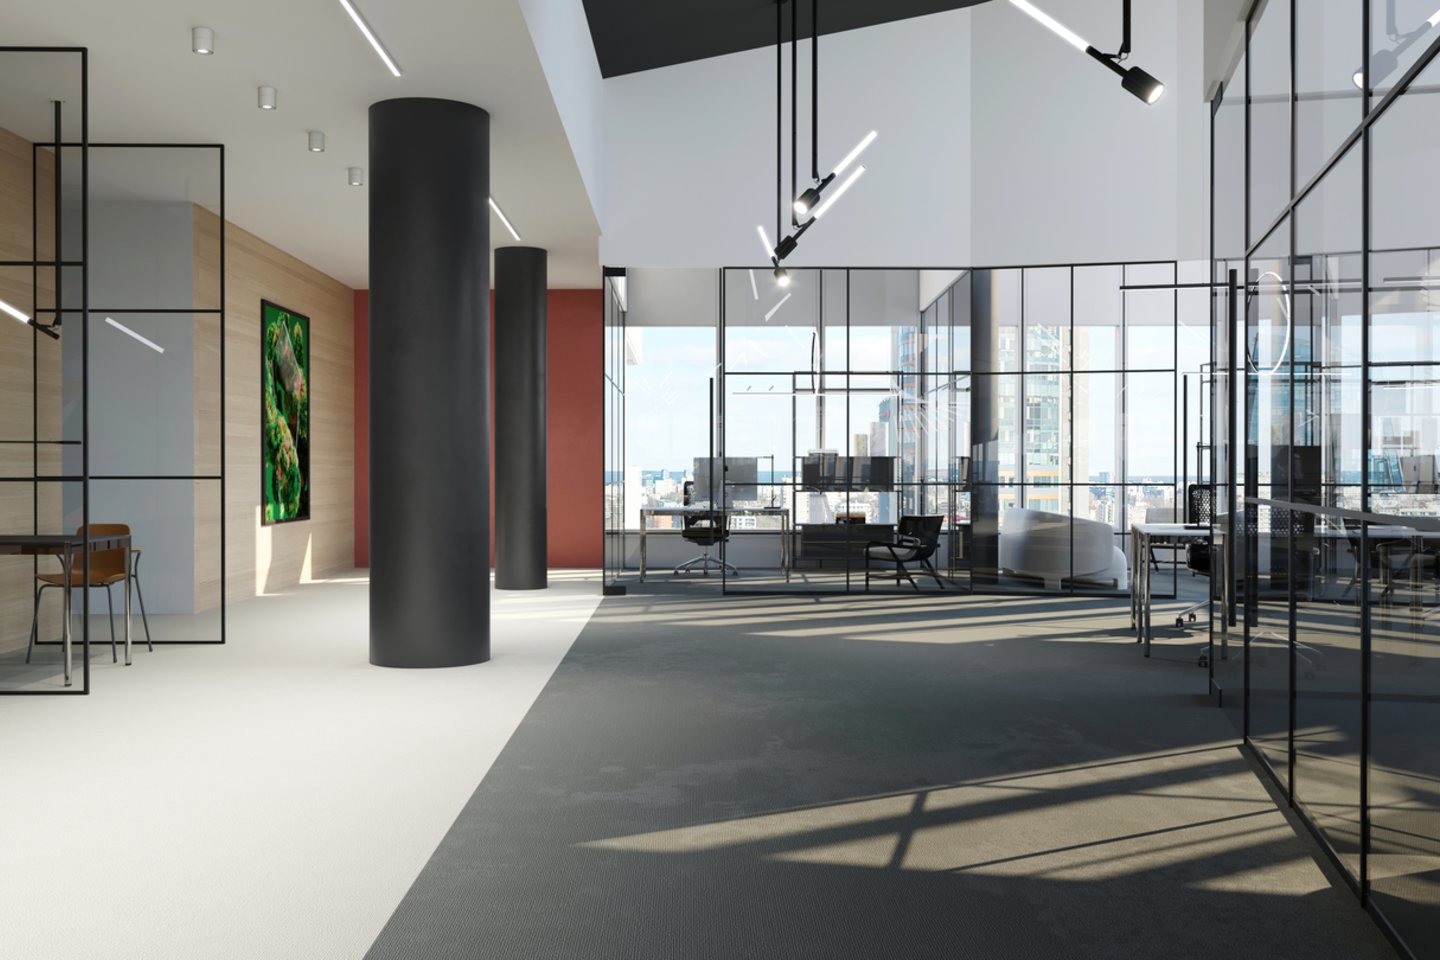 Verslo centro statybas planuojama užbaigti kitų metų rugsėjį tačiau pastate jau dabar išnuomota maždaug trečdalis (7 tūkst. kv. m) rinkai siūlomo biuro patalpų ploto.<br>„Studio Libeskind“ vizual.